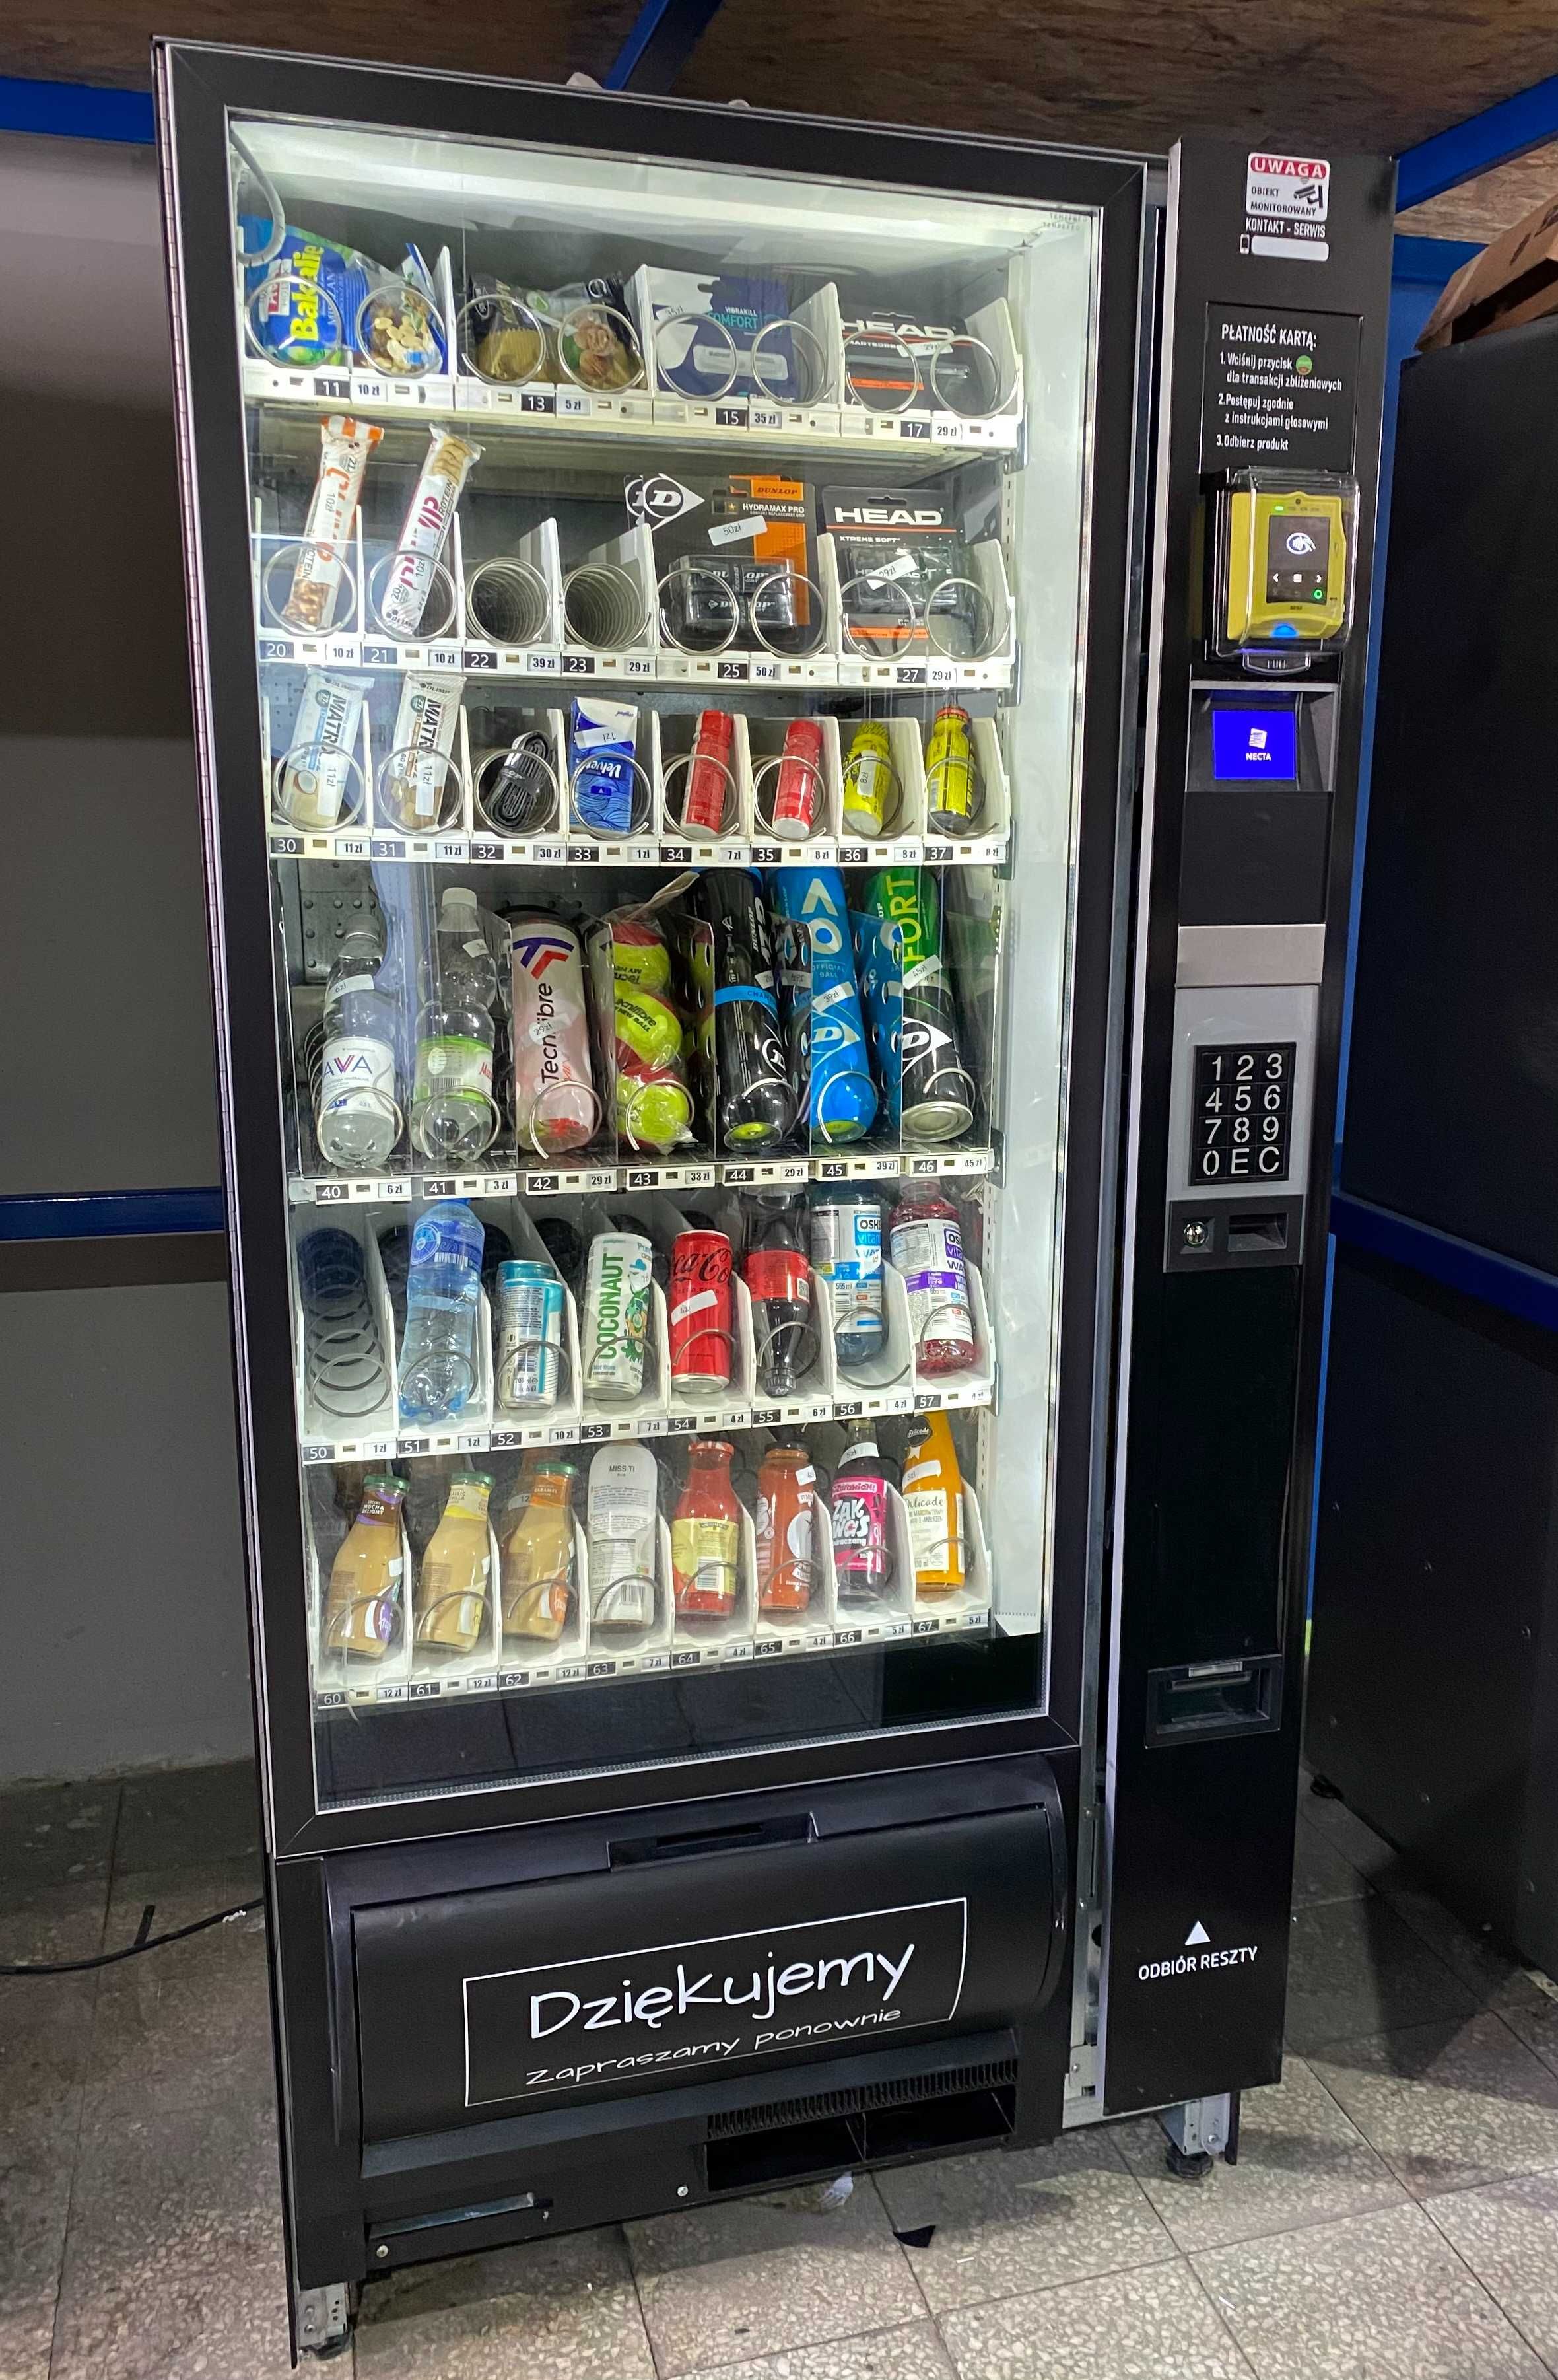 NECTA SAMBA Automat Vendingowy Sprzedający Samoobsługowy Vending